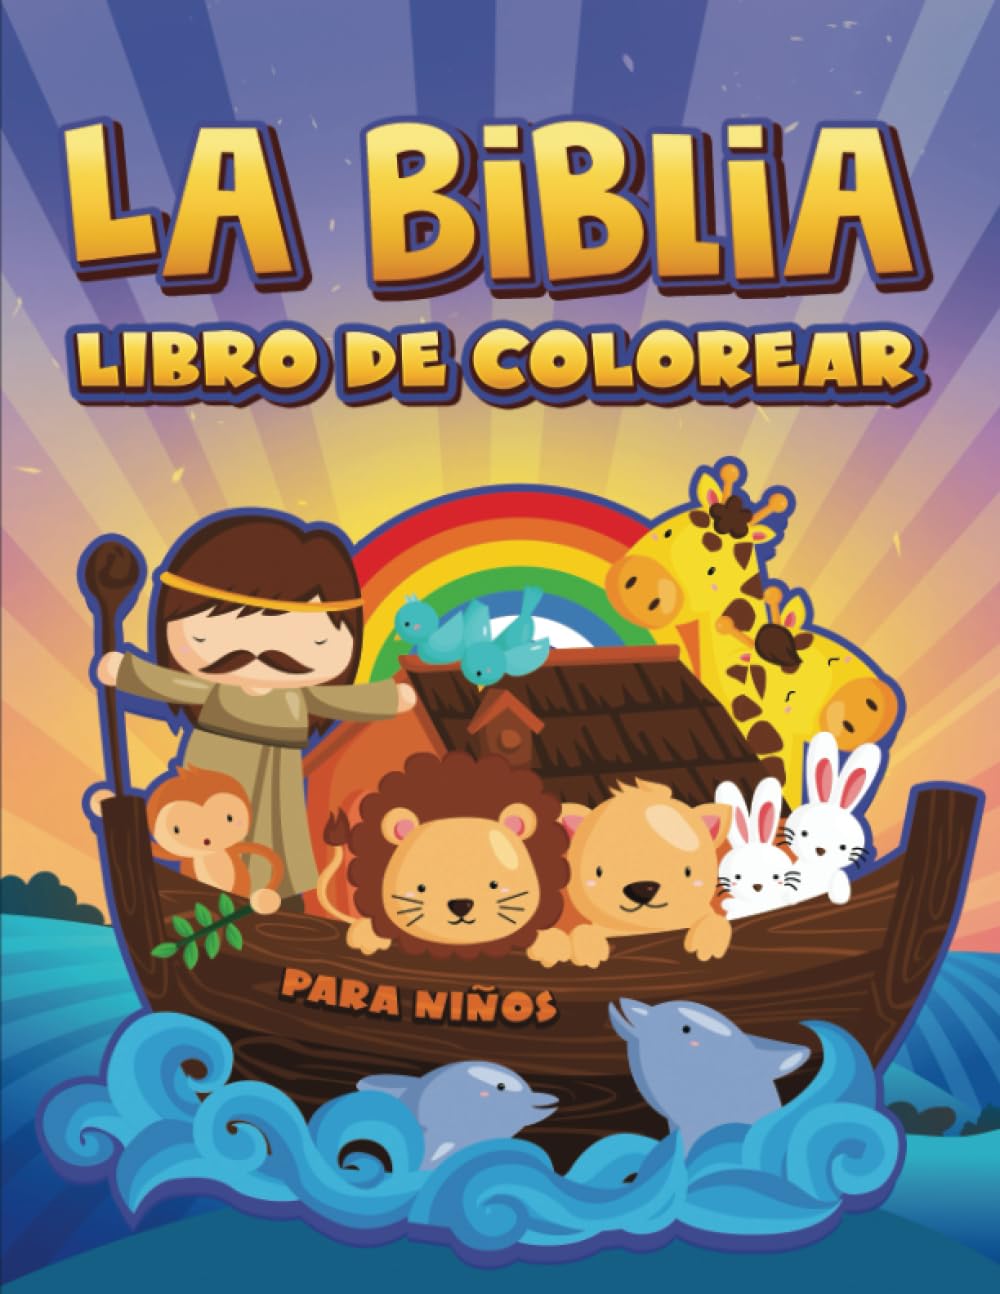 La Biblia: Libro de colorear para niños (Spanish Edition)